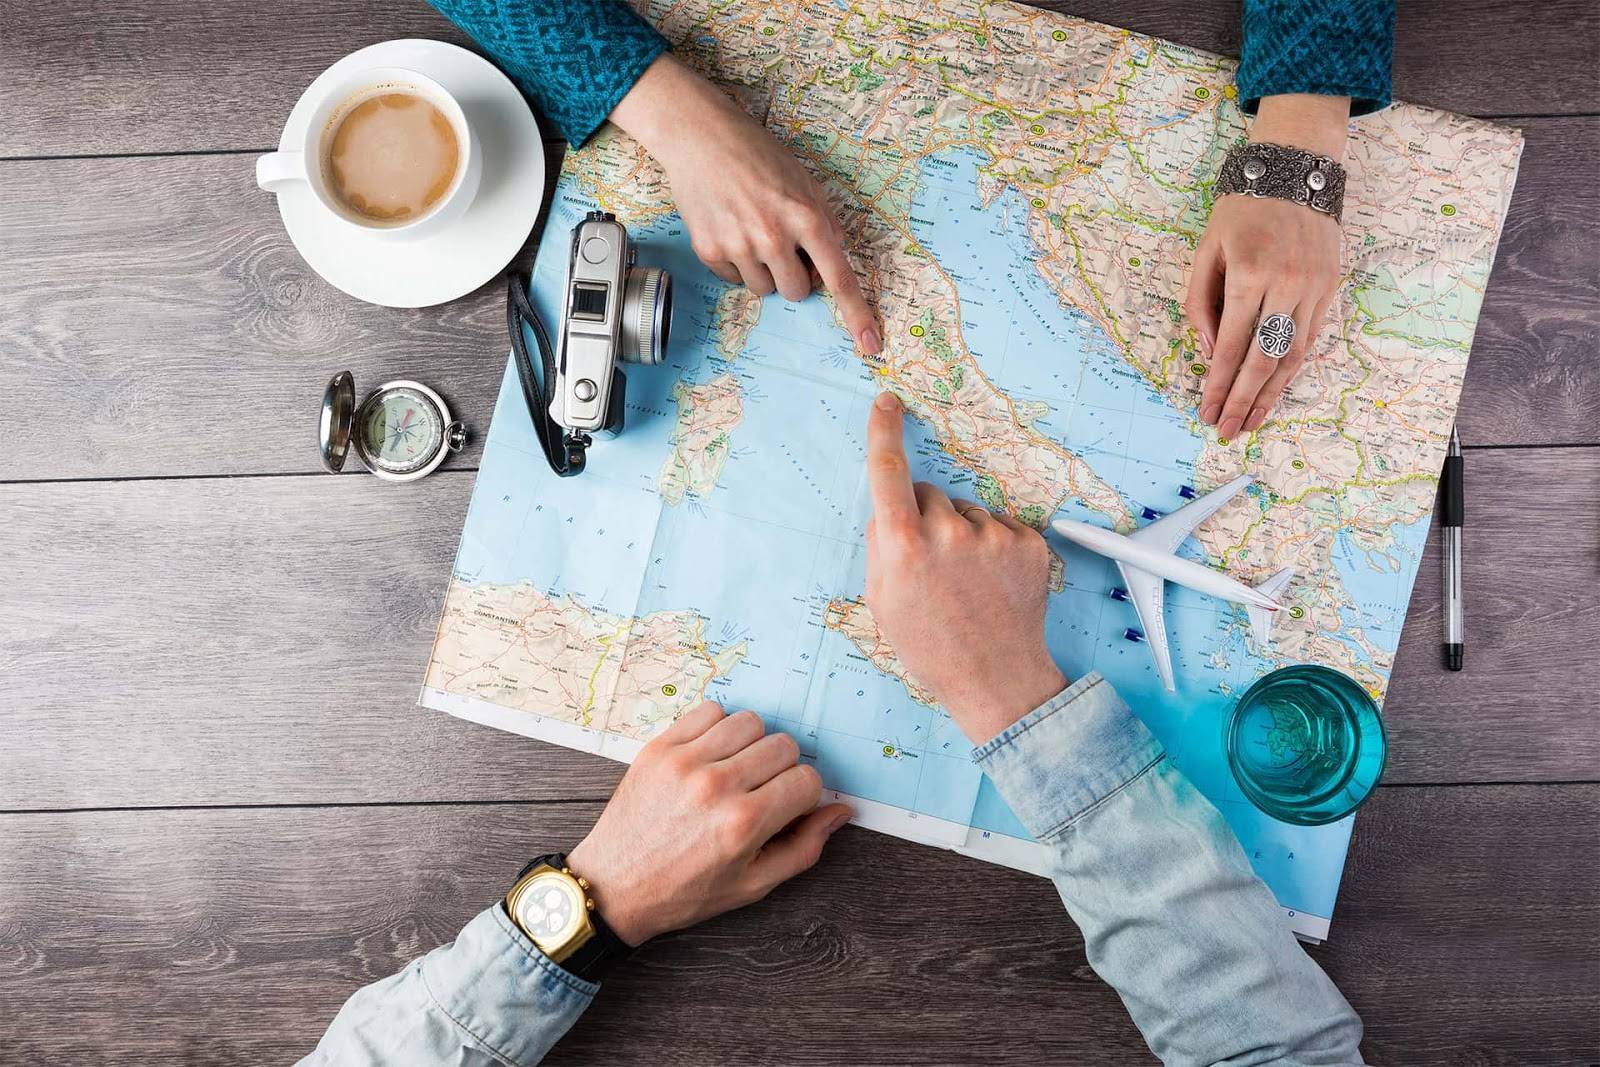 11 идеальных профессий для путешественников и как их получить
11 идеальных профессий для путешественников и как их получить